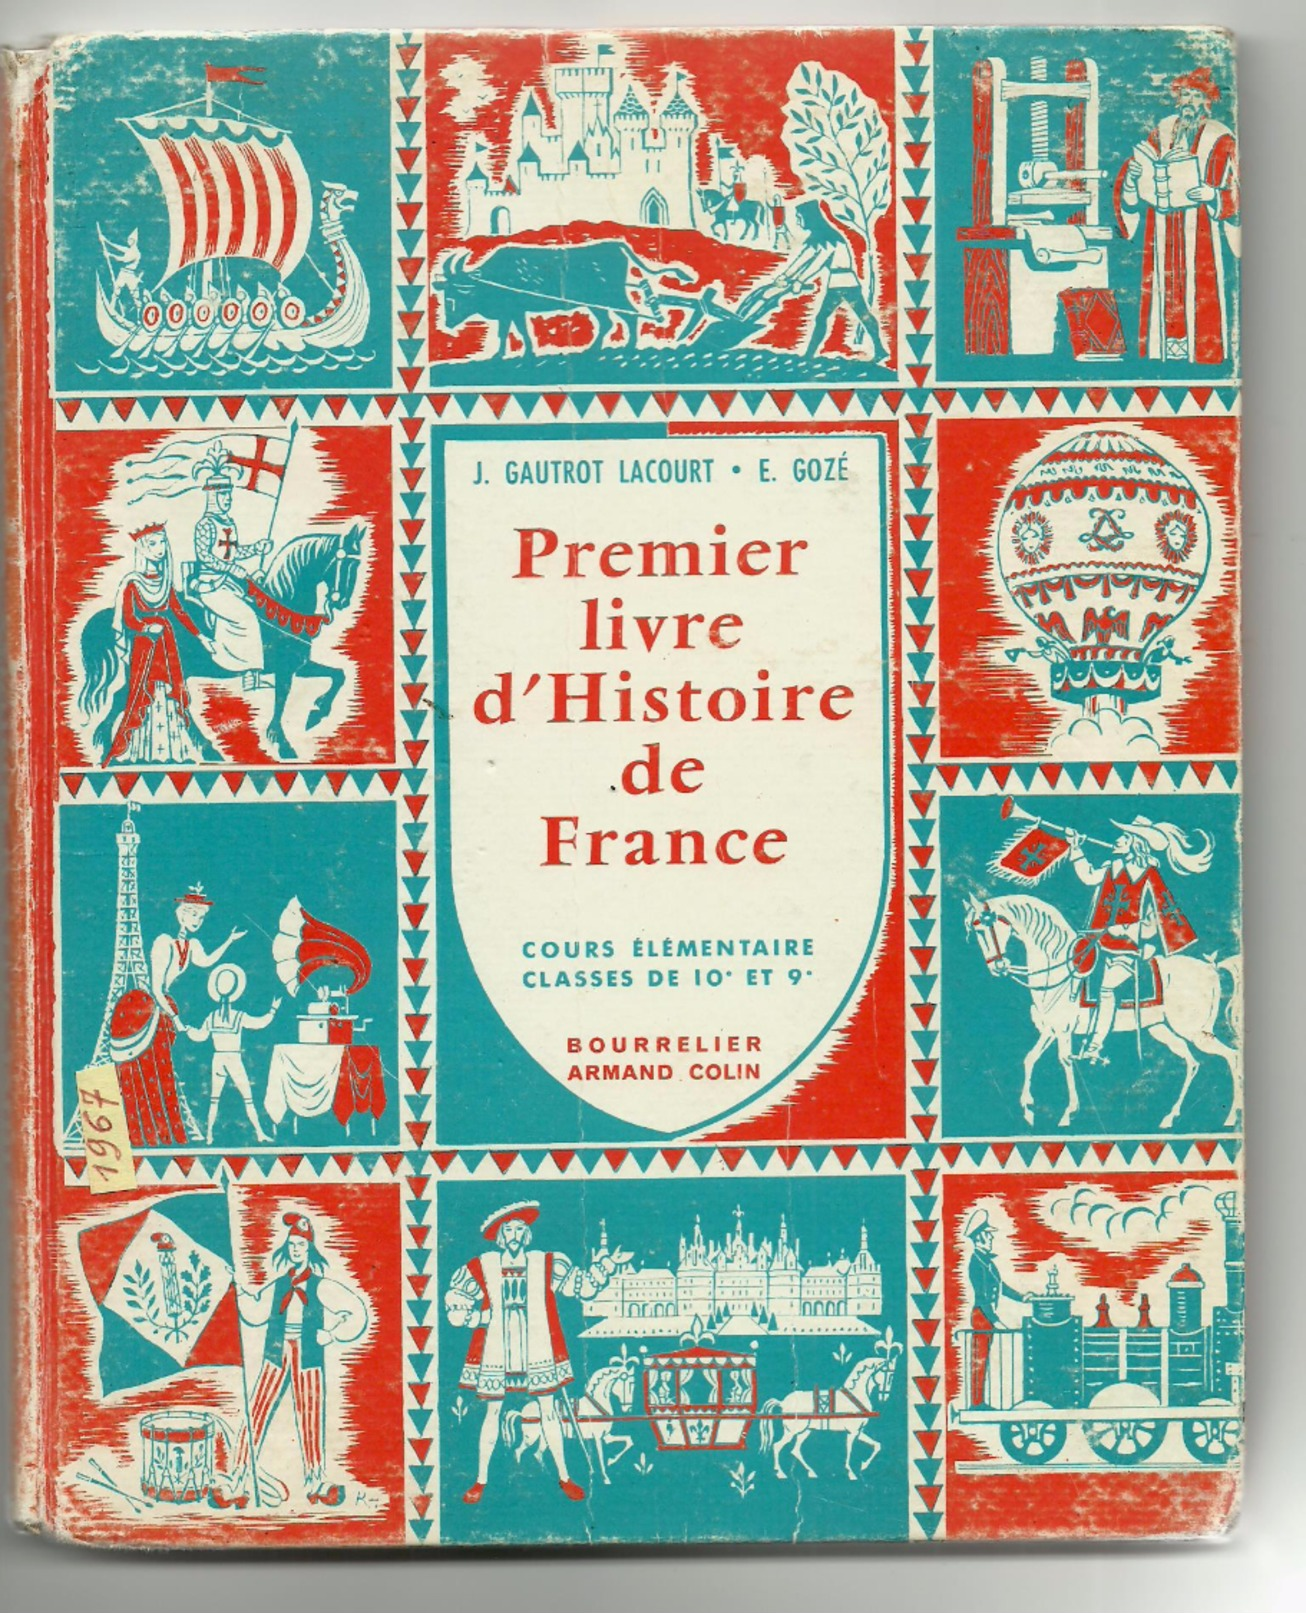 1967-EXCELLENT état !-PREMIER LIVRE D'HISTOIRE DE FRANCE -"CE1 CE2"-Ed.Bourrelier A.Colin-(Gautrot Lacourt,Gozé) - 12-18 Ans